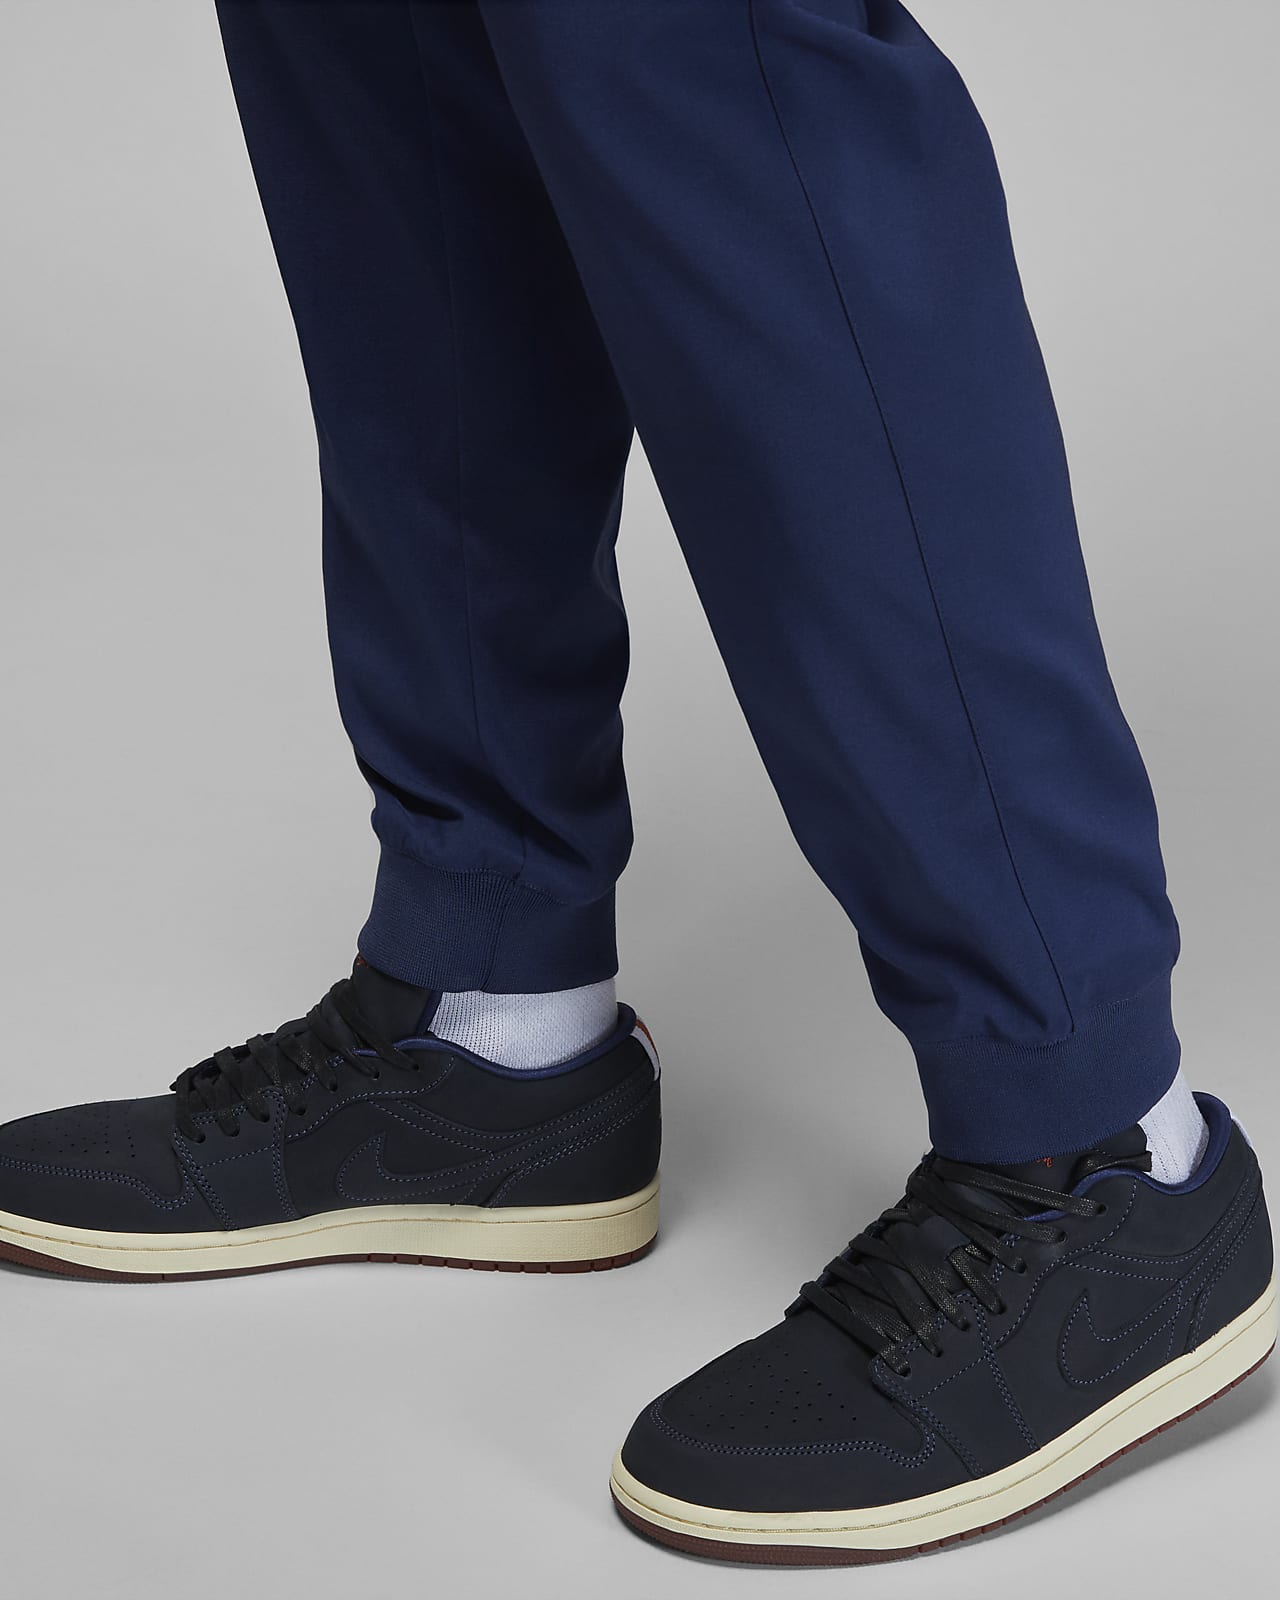 Jordan x Eastside Golf Men's Trousers. Nike LU